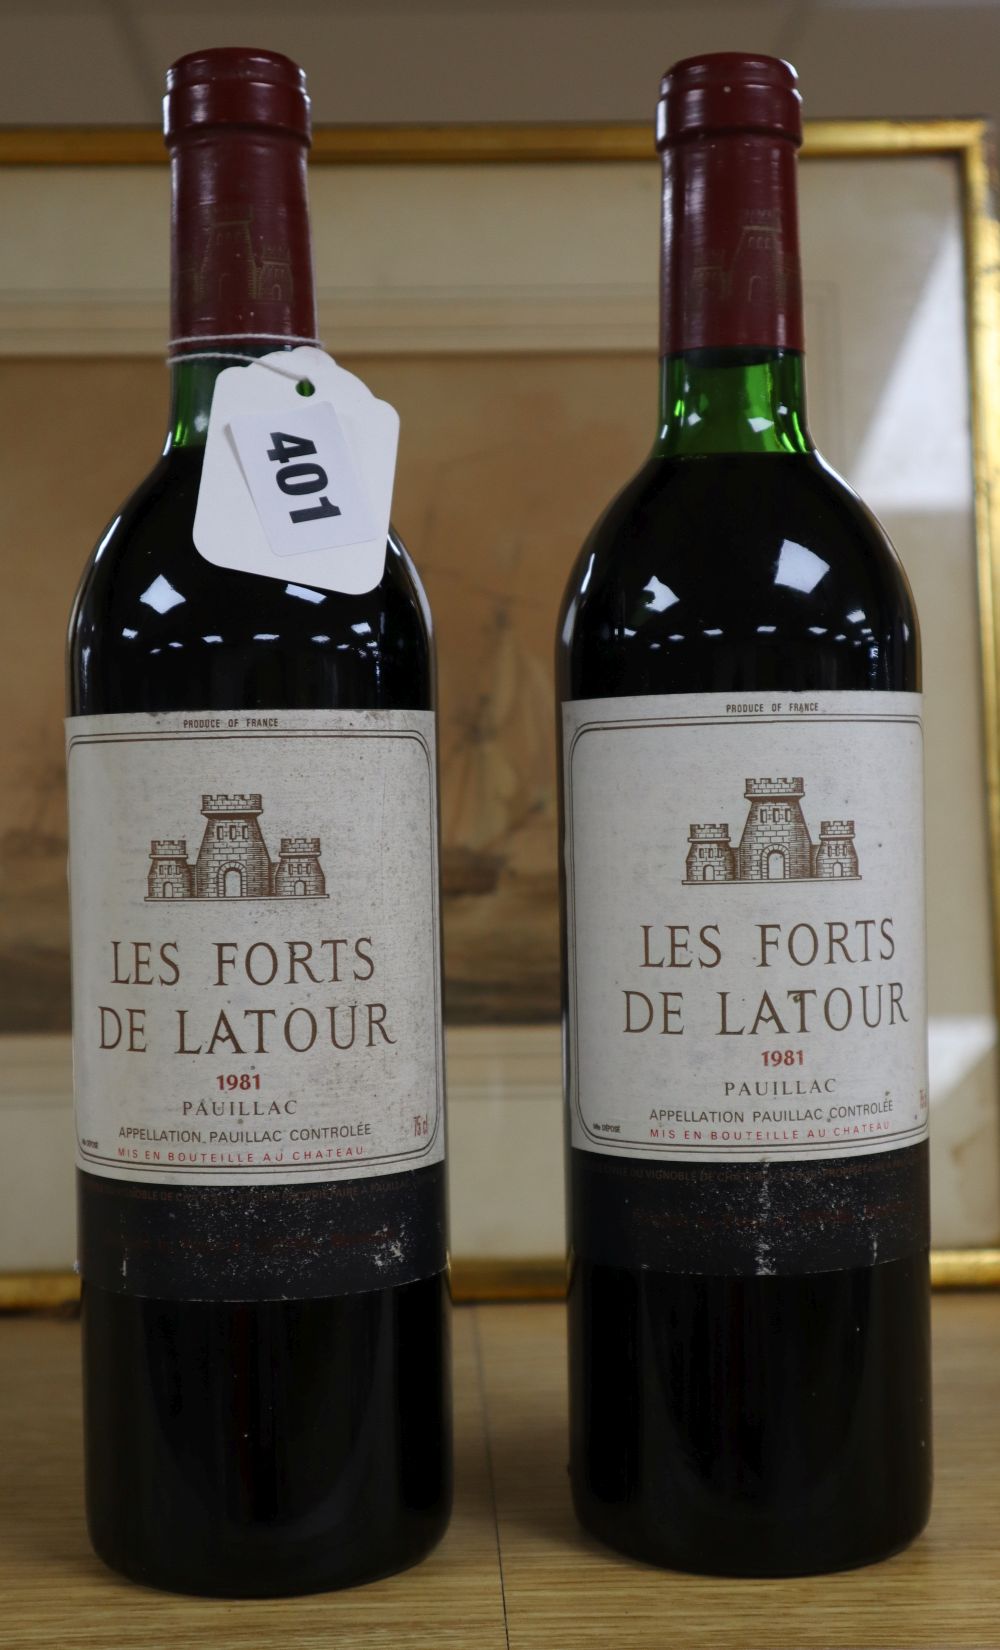 Two bottles of Les Forts de Latour (2nd wine Chateau Latour) -Pauillac, 75cl, 1981